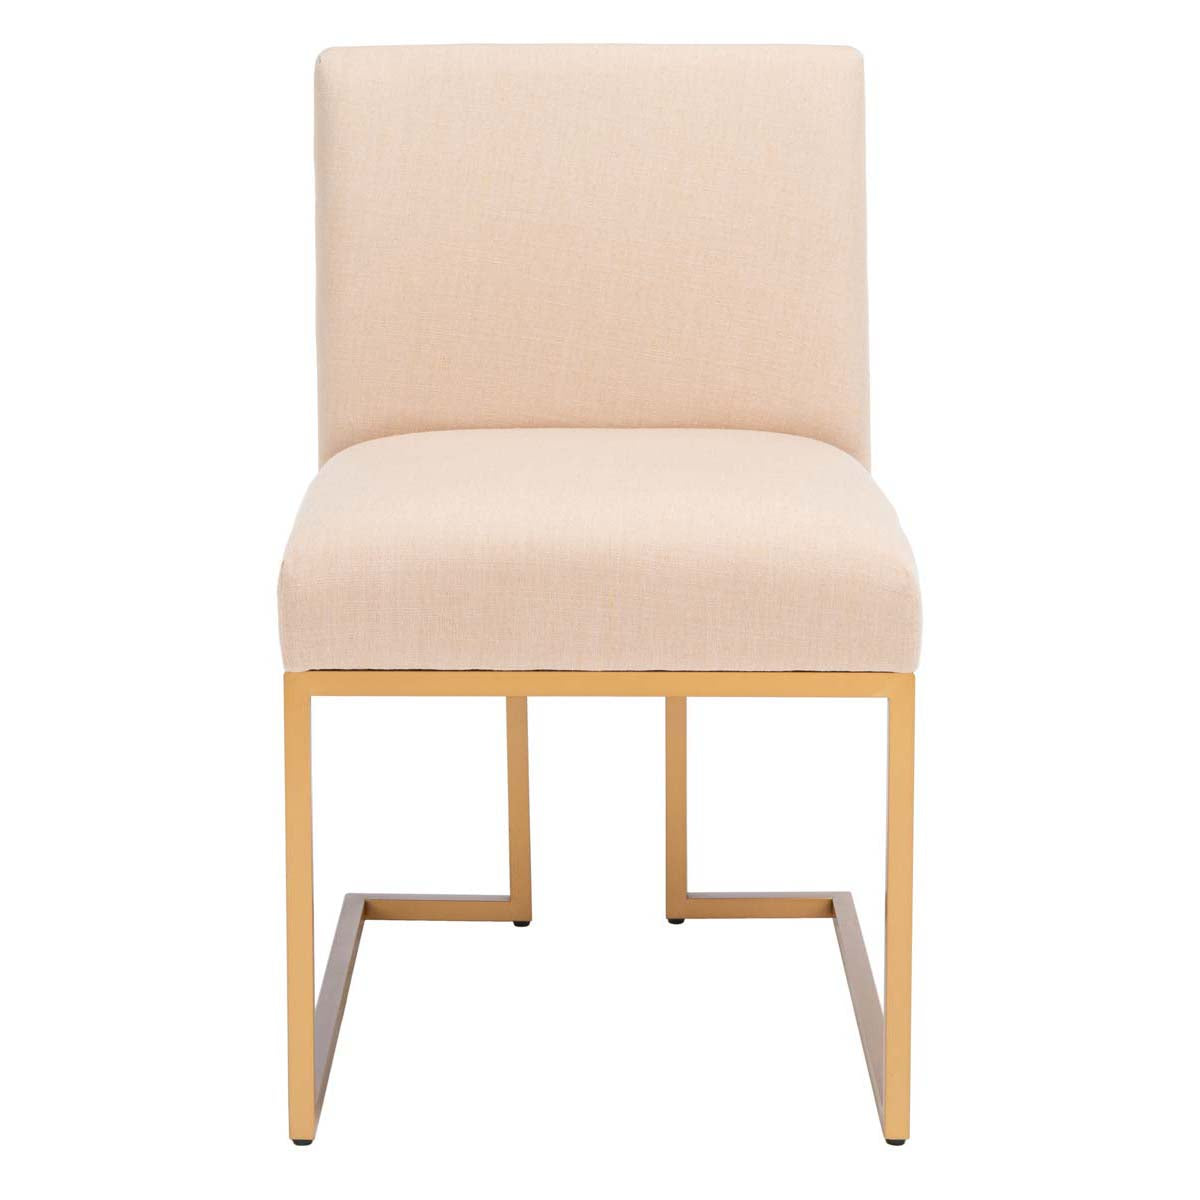 Safavieh Ayanna Side Chair , ACH6206 - Beige / Gold (Set of 2)